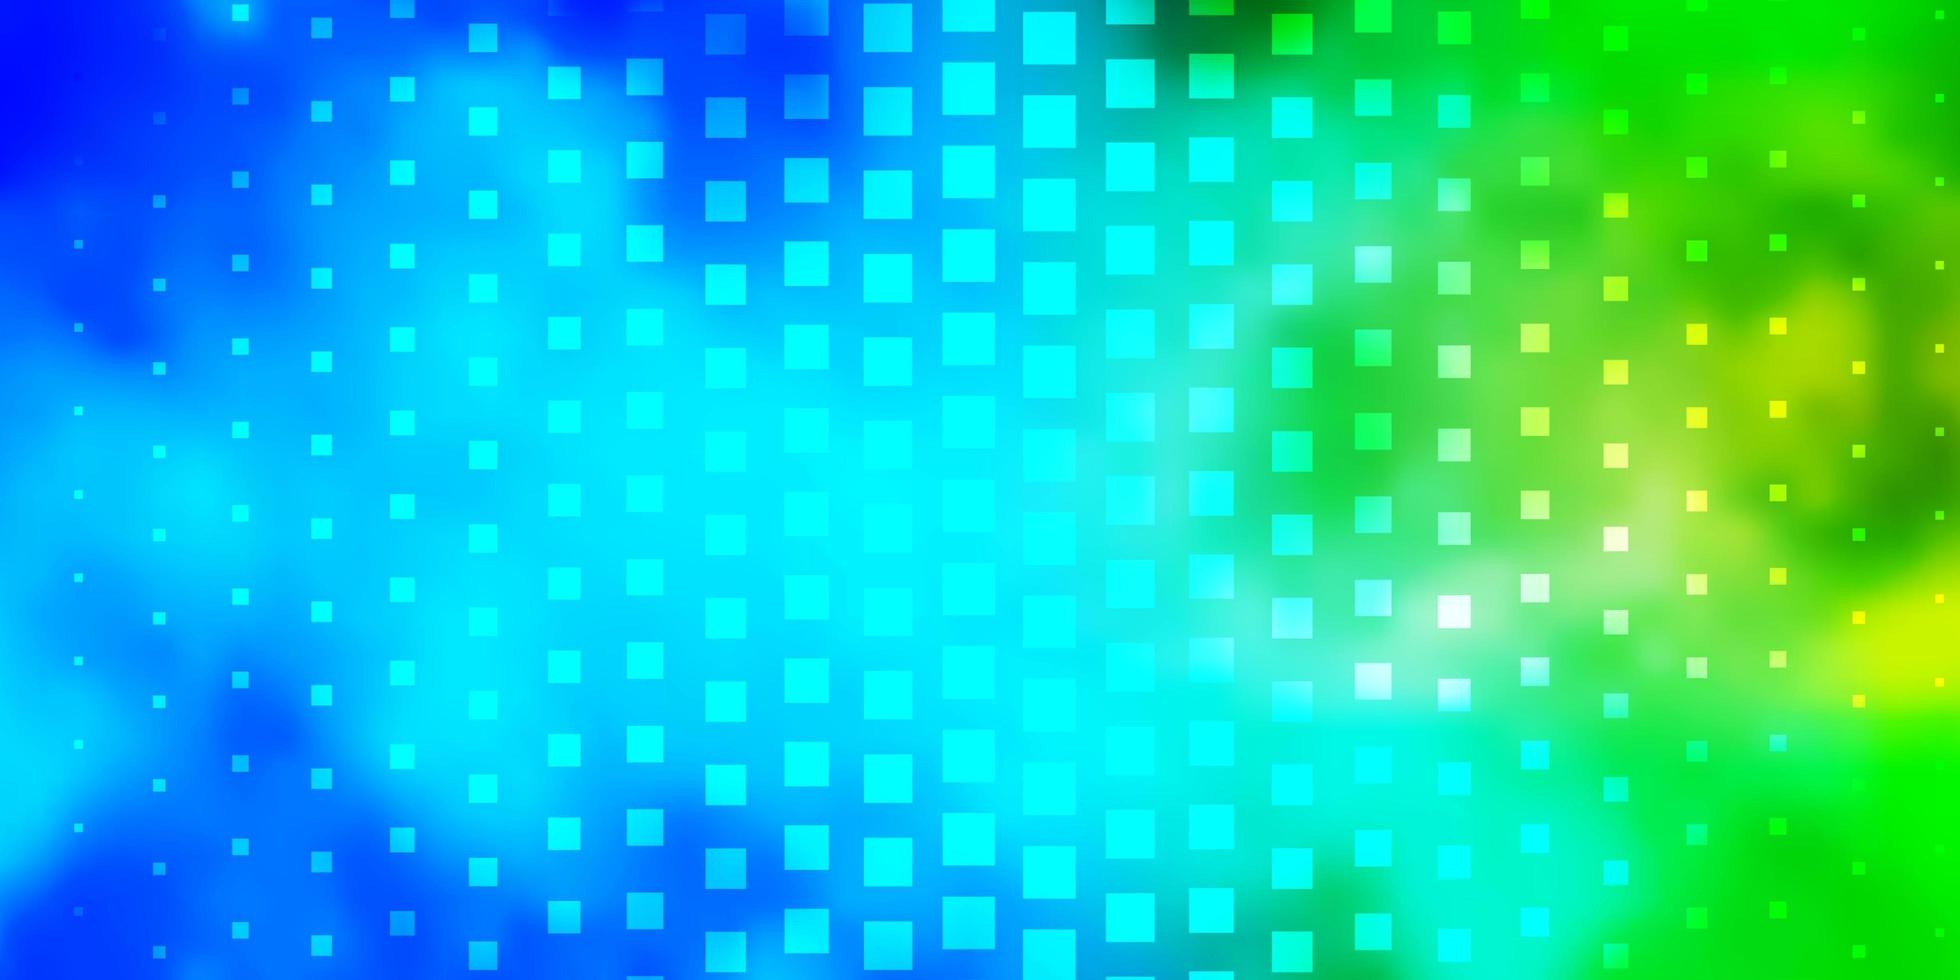 Fondo de vector verde azul claro con rectángulos Ilustración de degradado abstracto con patrón de rectángulos de colores para folletos de negocios folletos